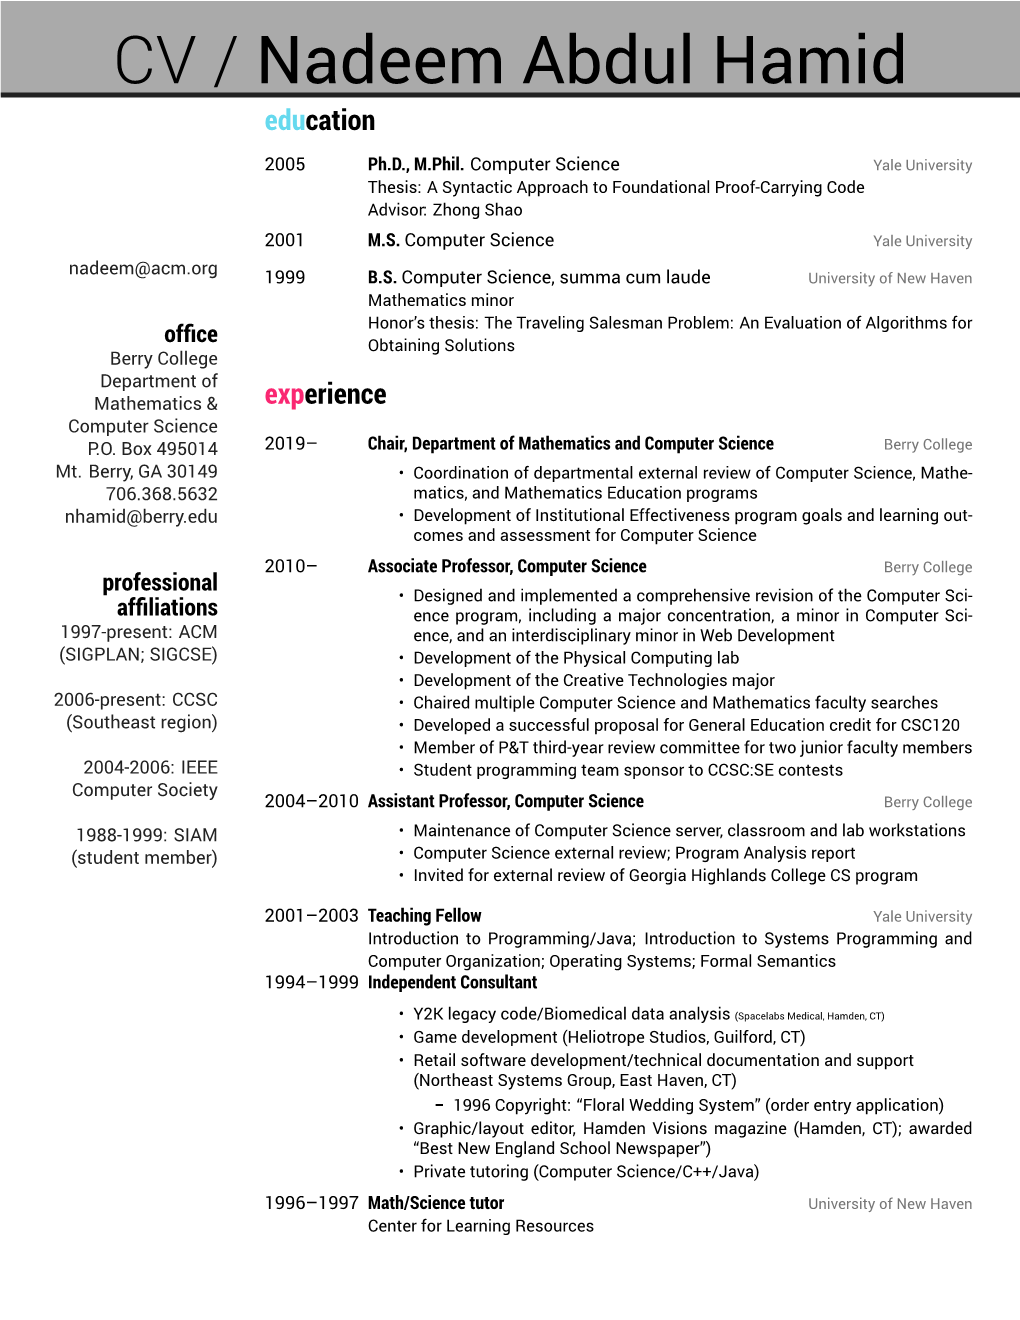 CV/Resume | Nadeem Abdul Hamid